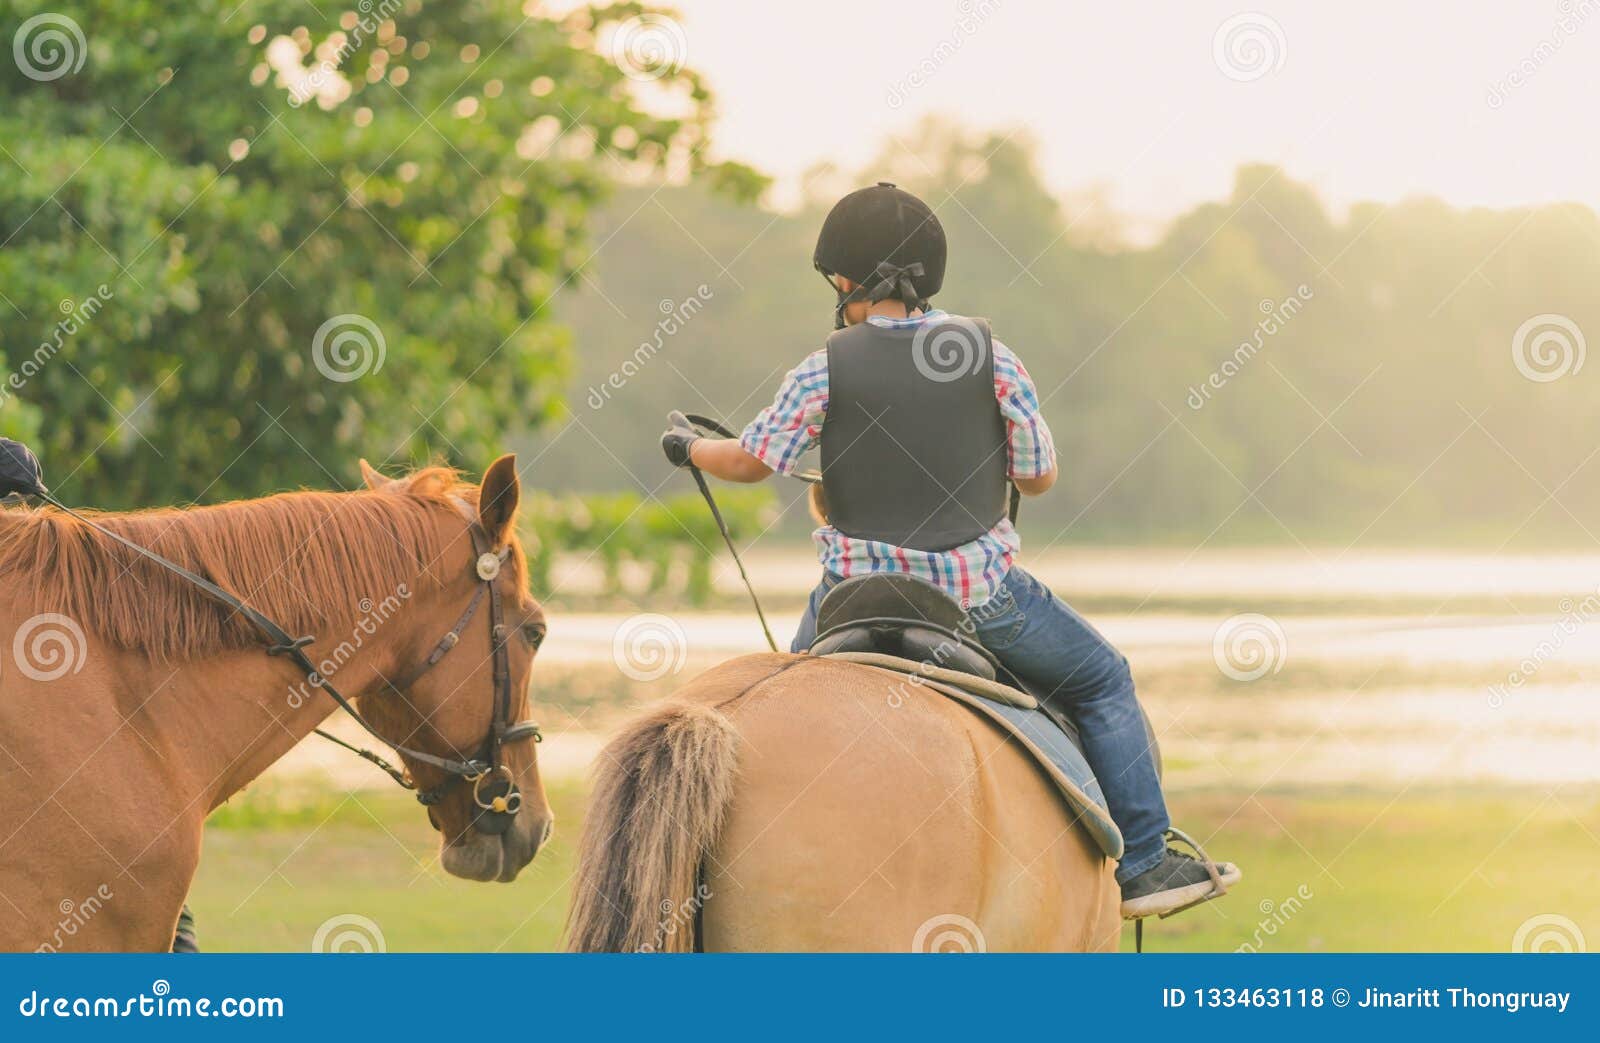 Мы вновь ехали на лошадях. Лошадь едет на лошади. Научишь меня  на конях кататься. Ребенок едет на лошади. Фотосессия возле коня на скаку остановит.